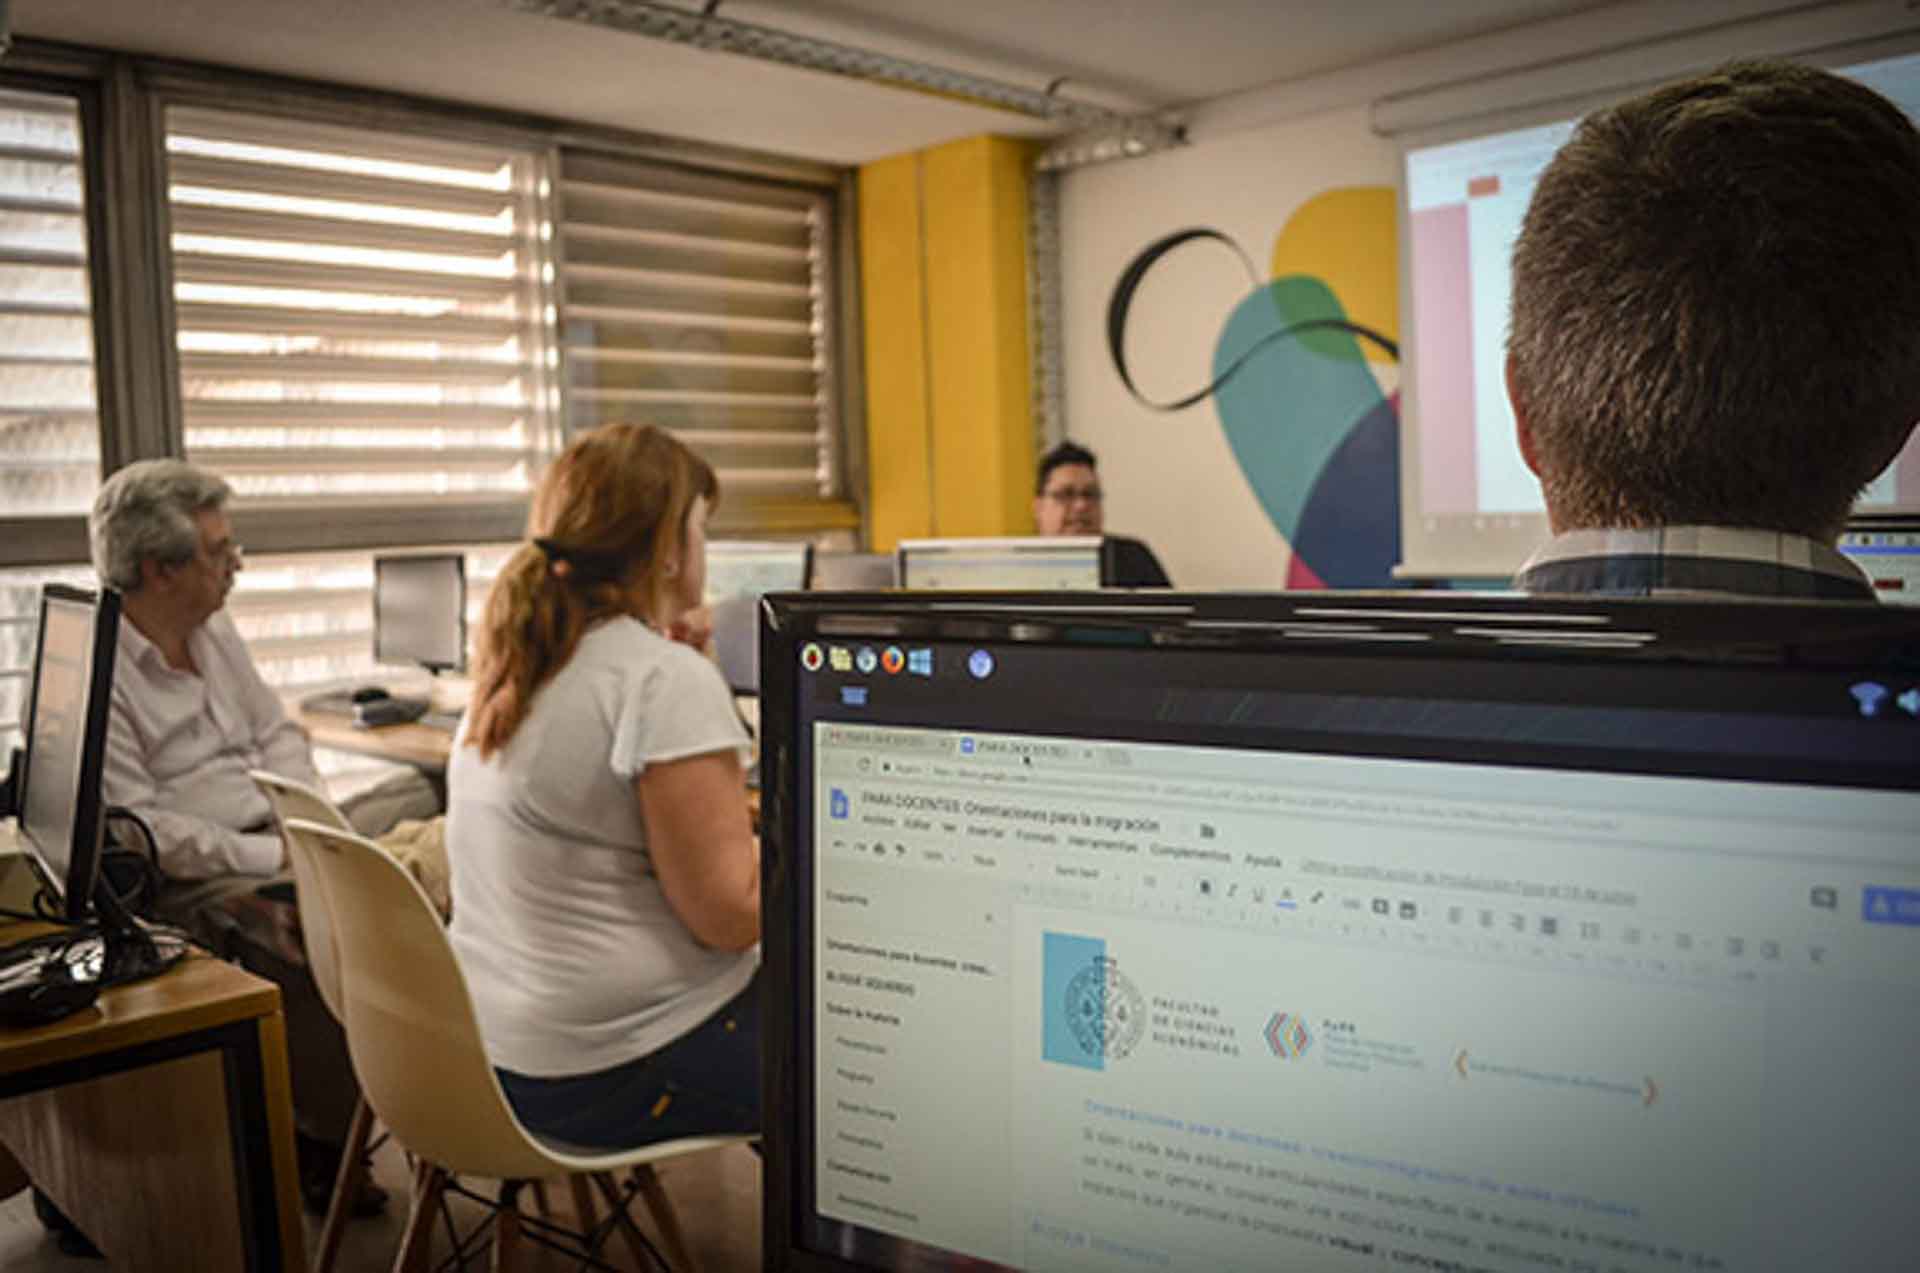 Tres docentes sentados frente a computadoras, dentro de un aula que tiene un mural pintado en una pared y un gran ventanal, observan la exposición de un docente que está de pie, en un día luminoso